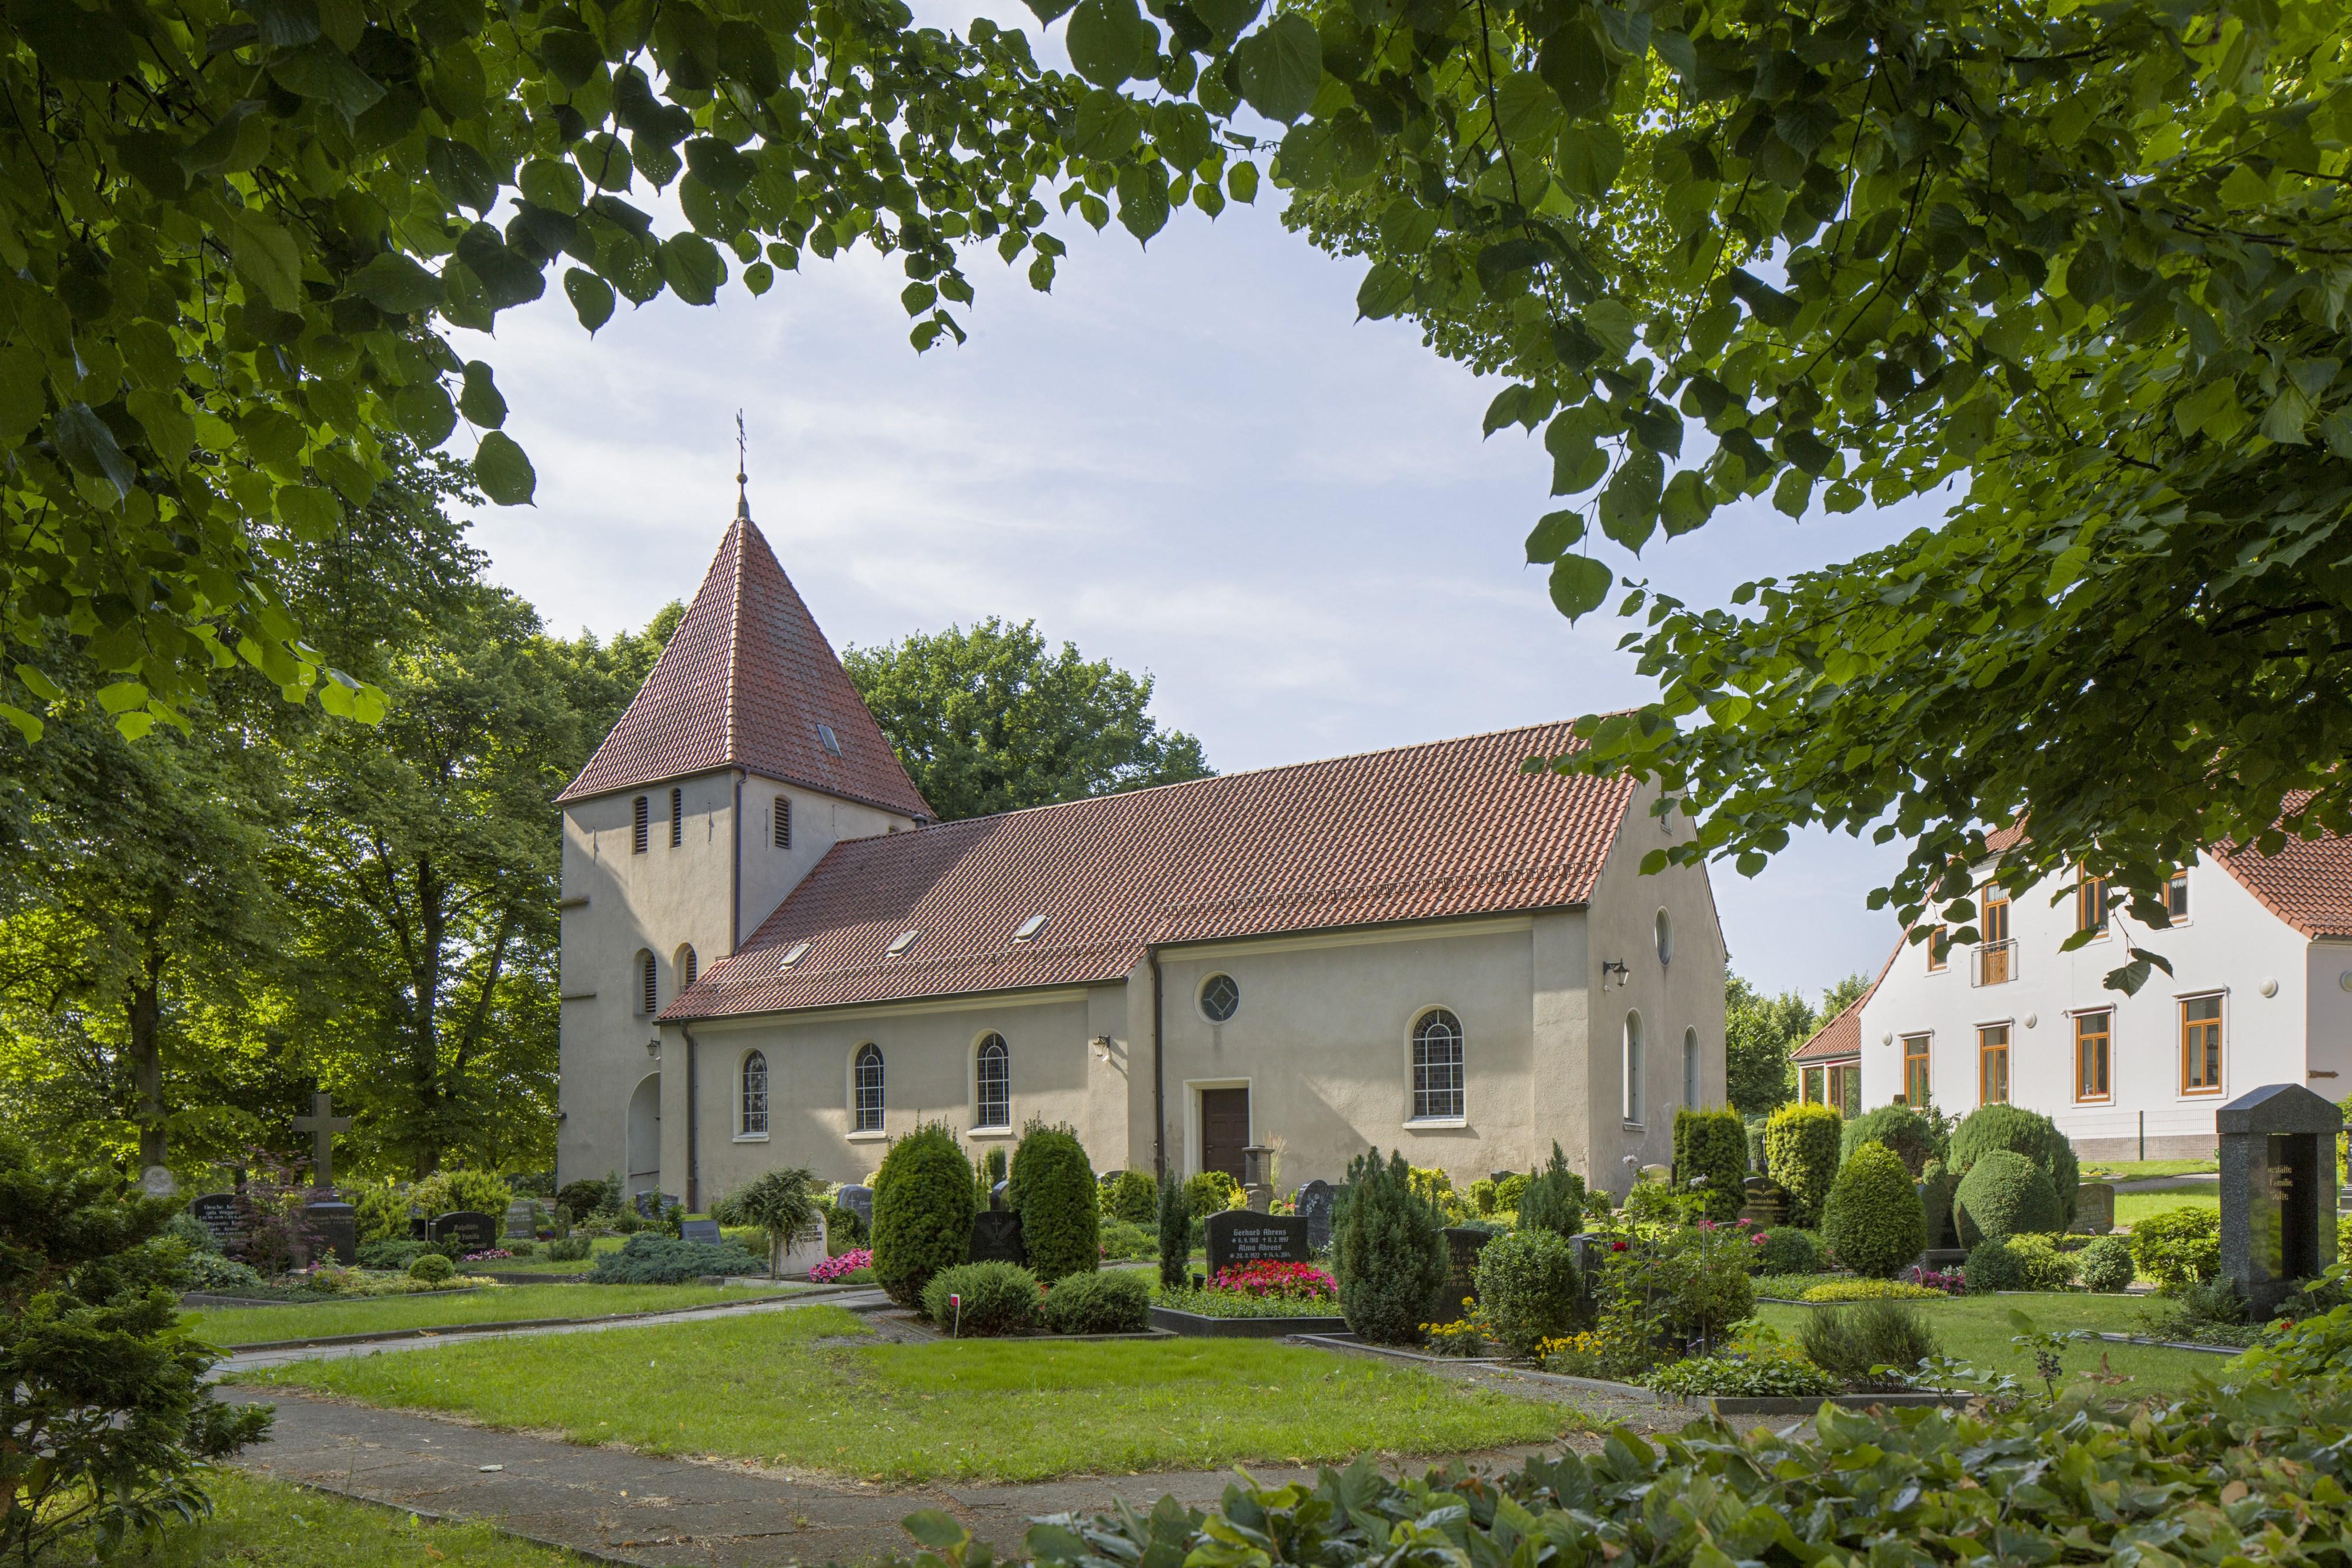 Bild der St. Jacobi-Kirche - Kirchengemeinde Seehausen